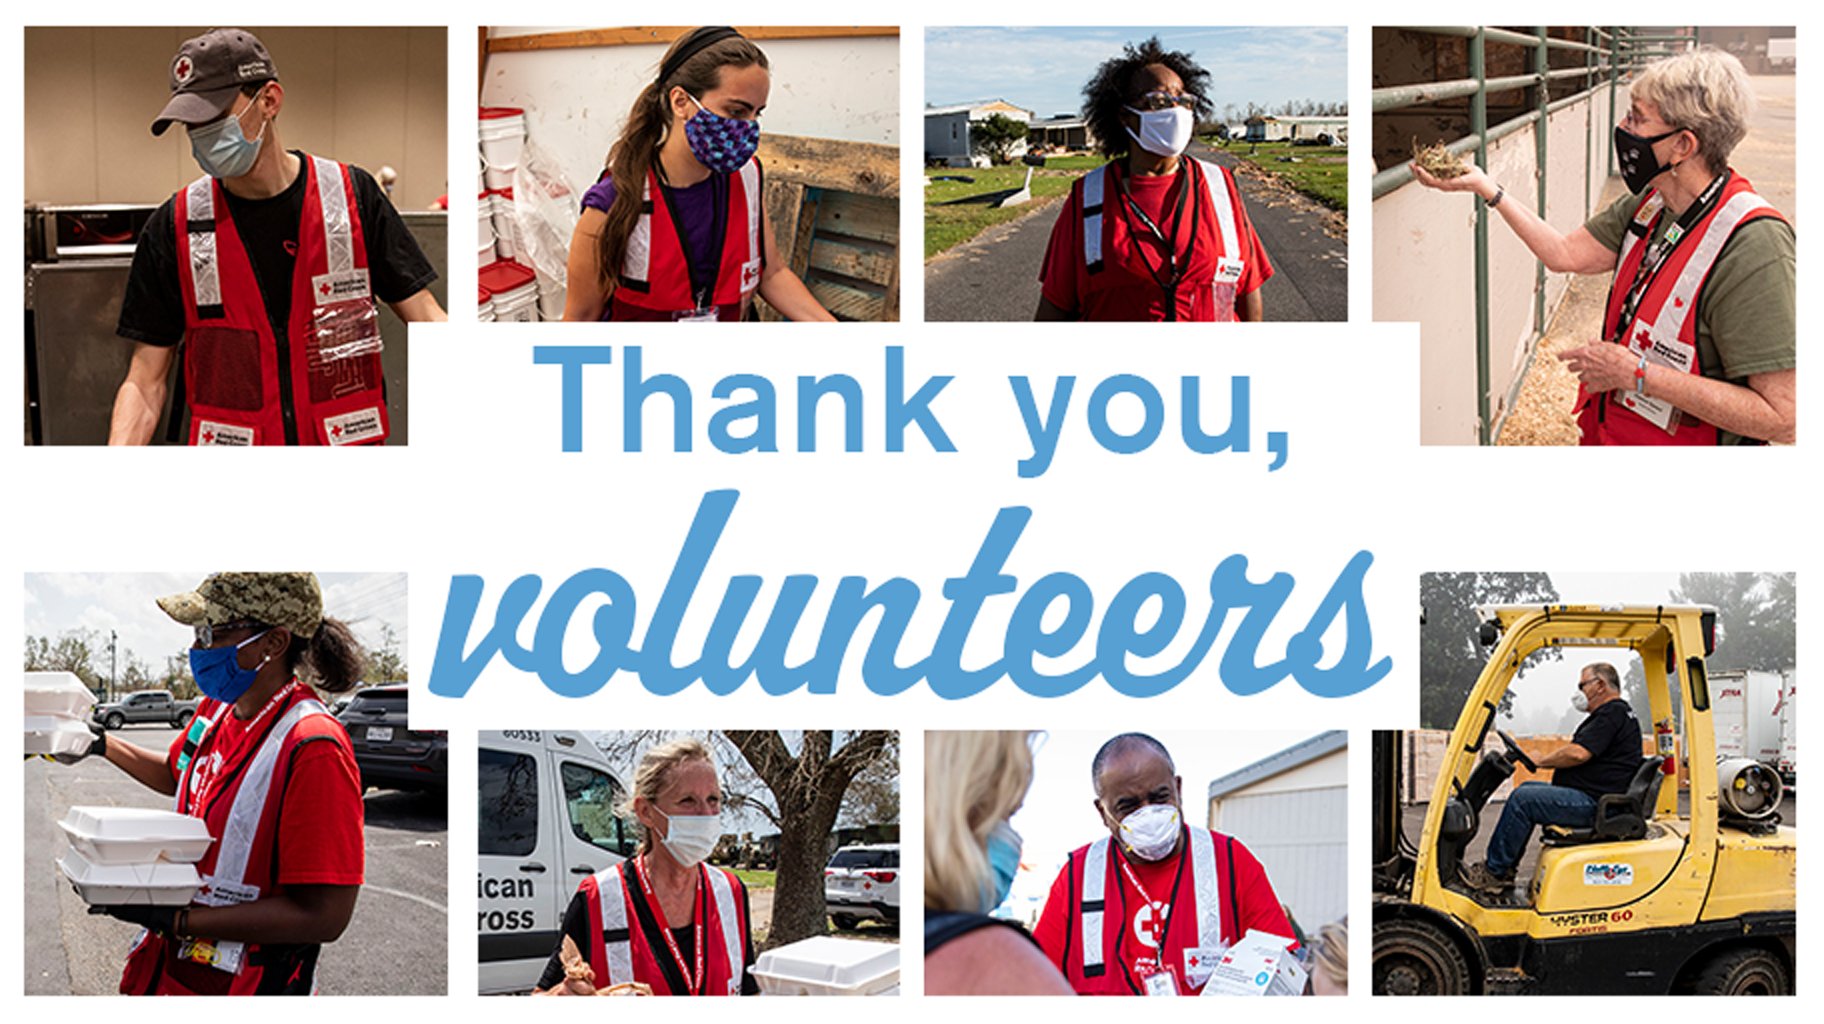 National Volunteer Week Red Cross thanks volunteers for stepping up